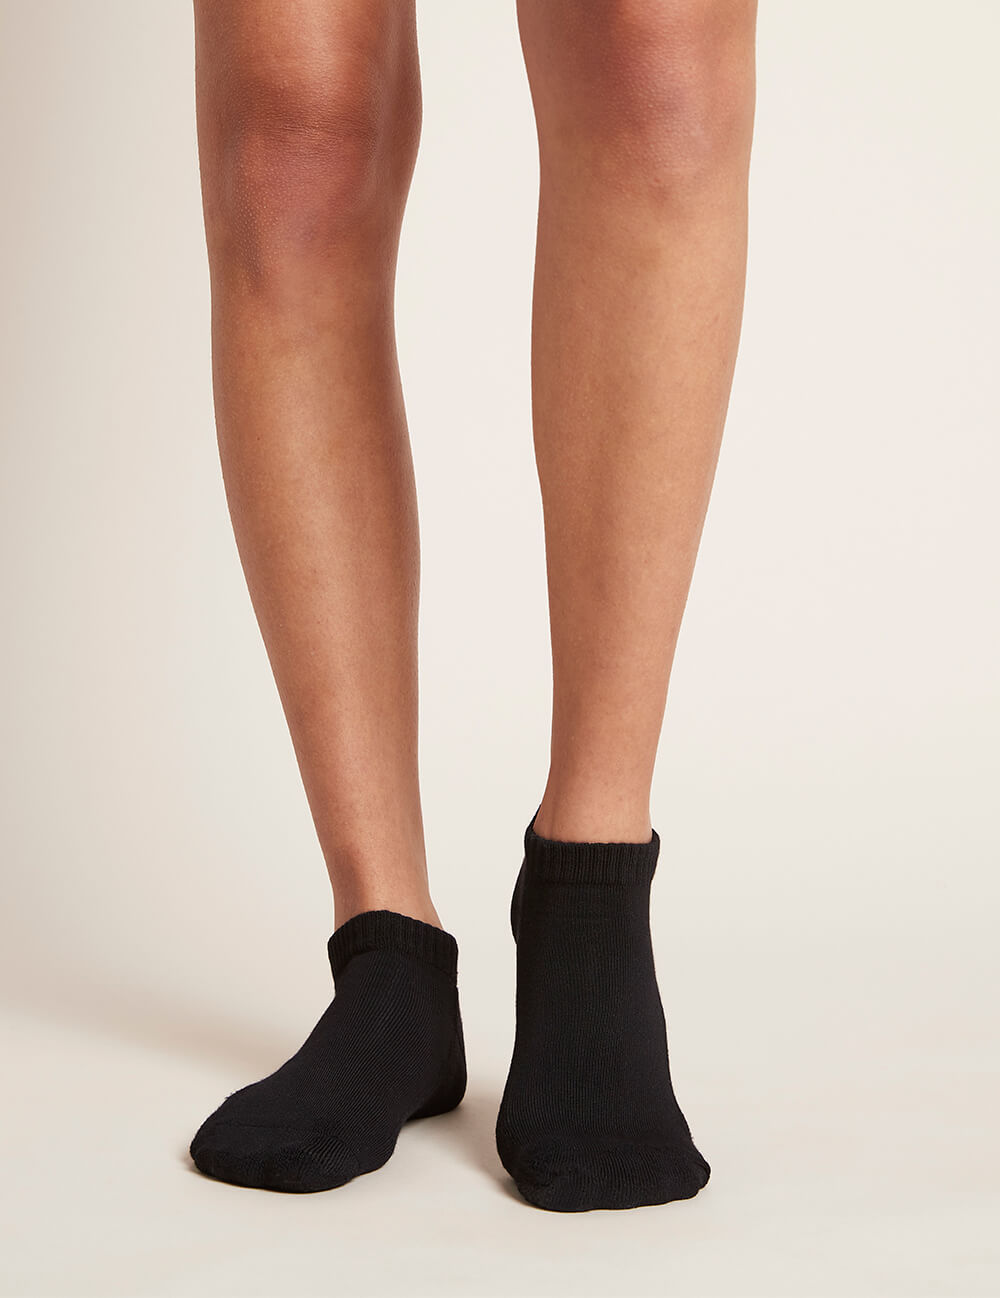 Women_s-Low-Cut-Cushioned-Sneaker-Socks-Black-Front.jpg